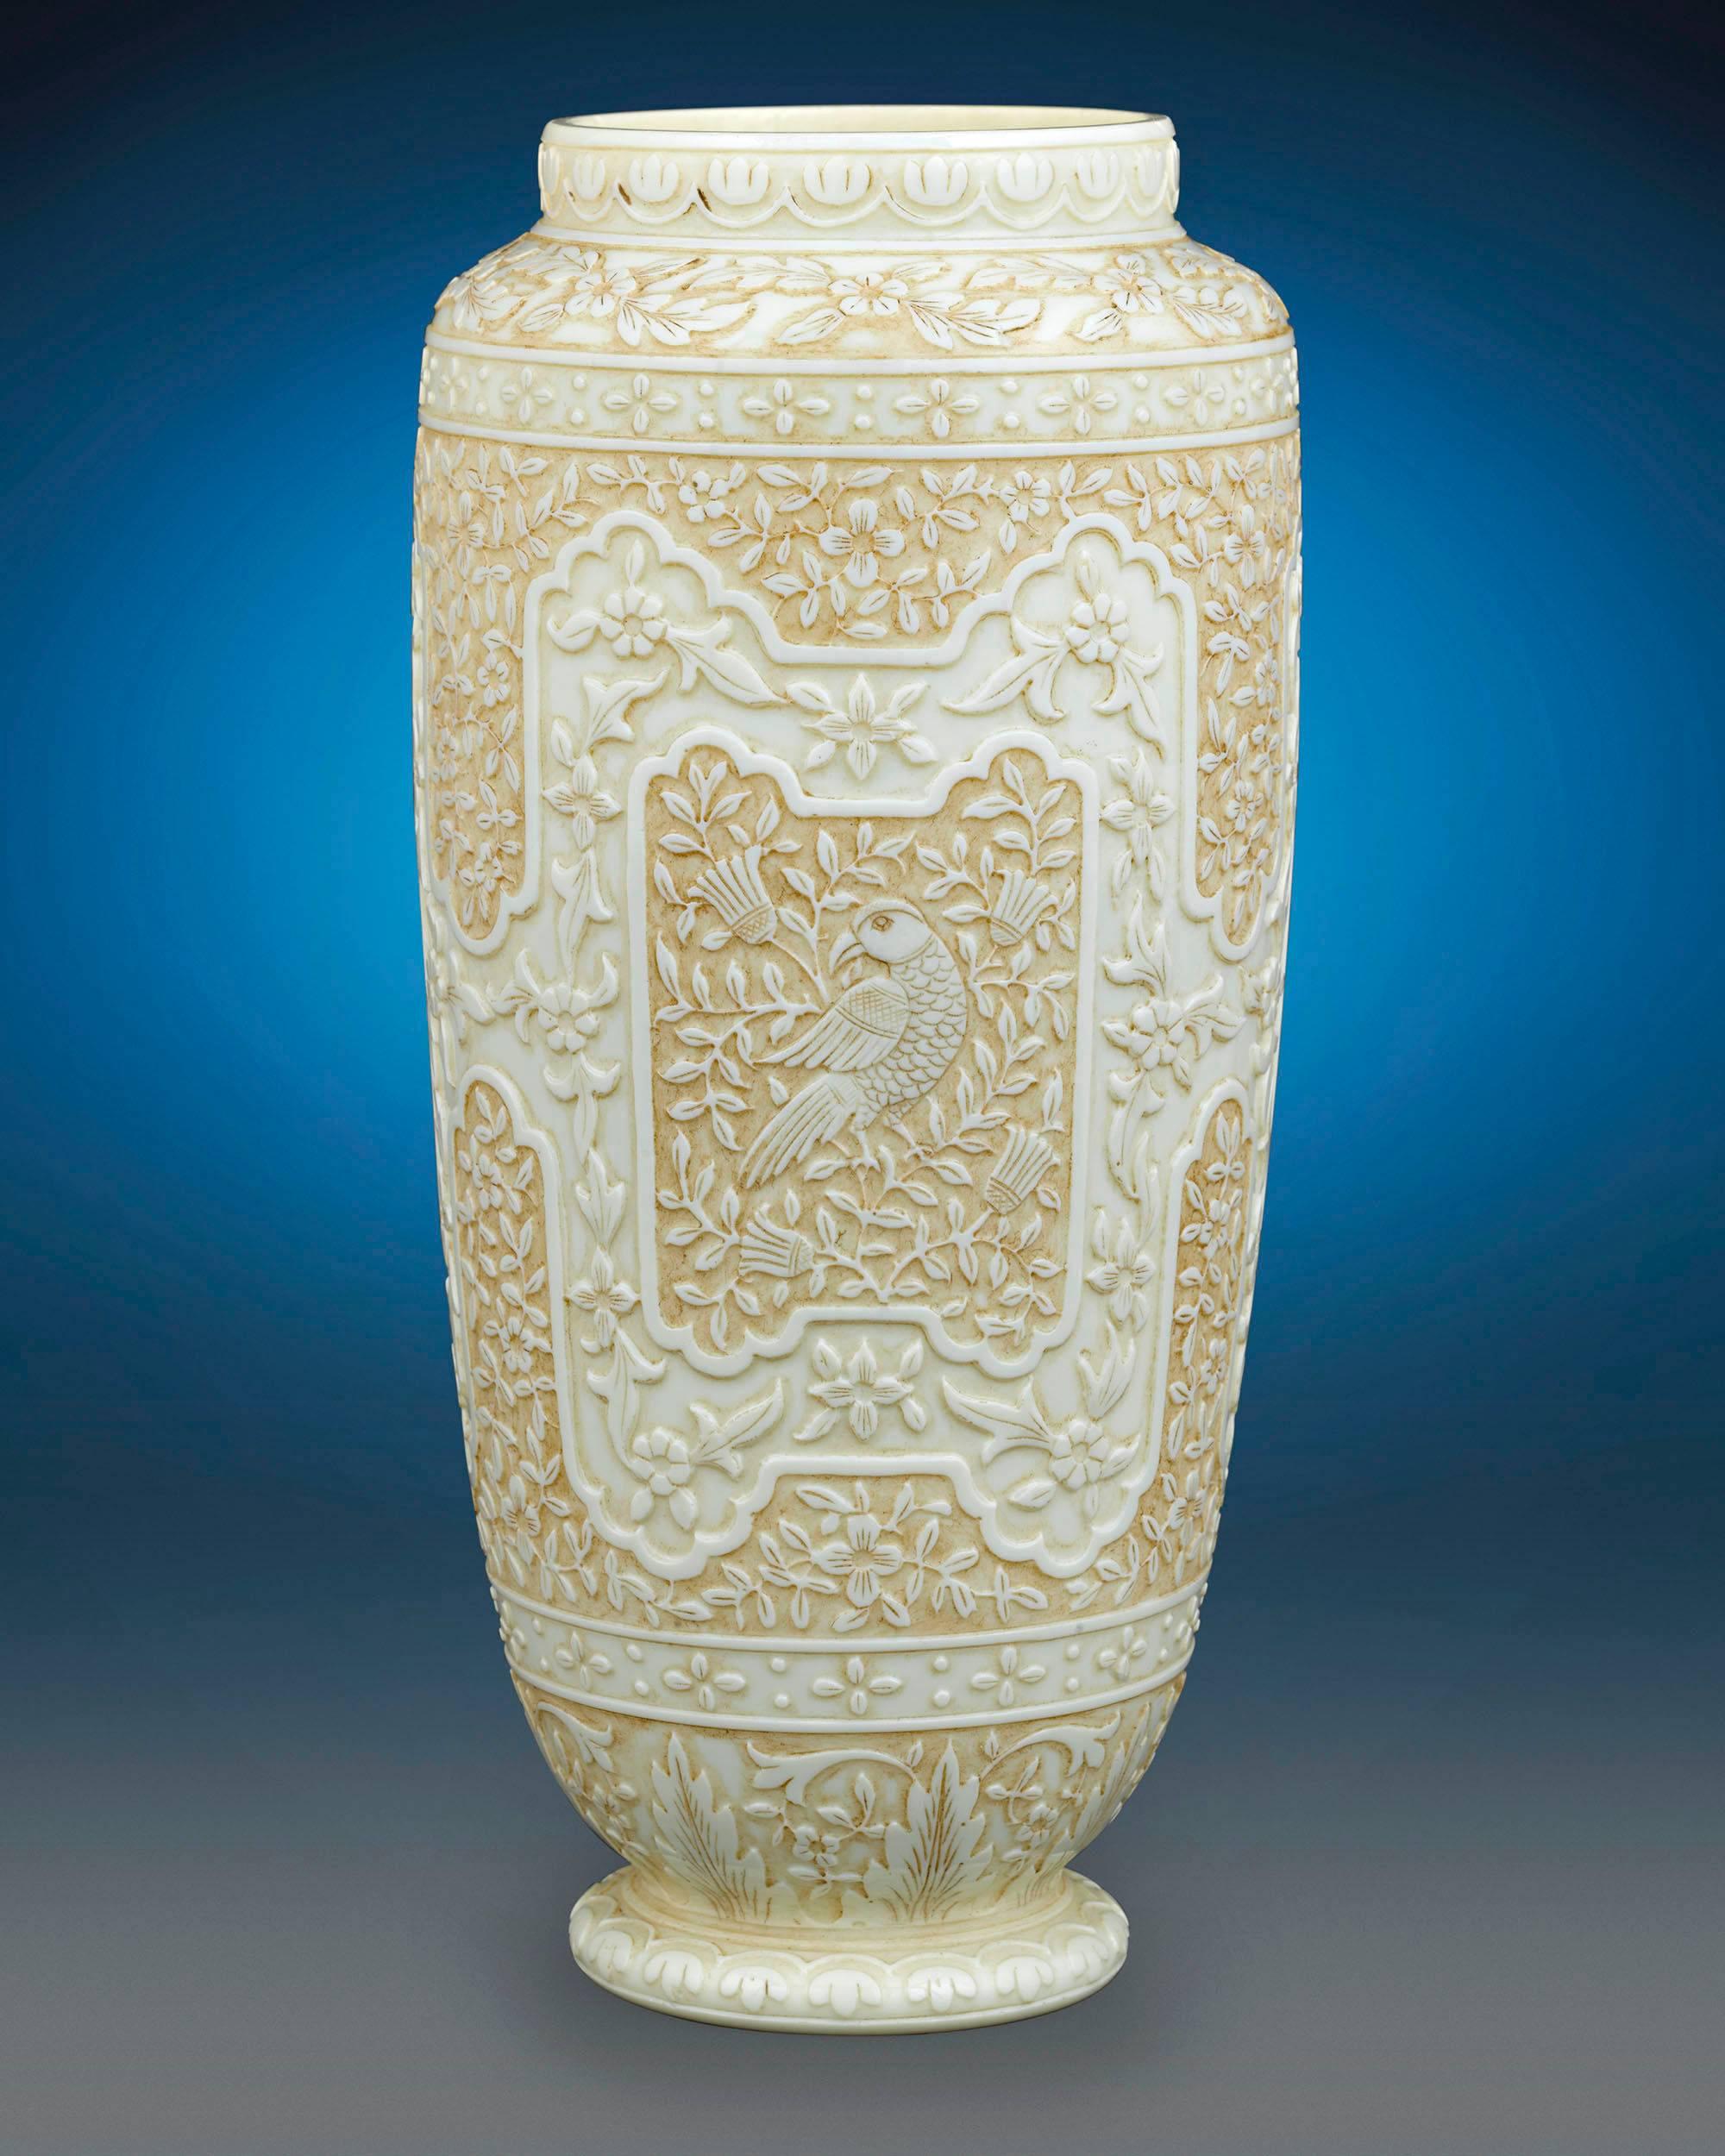 Diese handgefertigten Vasen von Thomas Webb & Sons, die den subtilen Luxus von Elfenbein nachahmen, sind eine bemerkenswerte Rarität. Webb entwickelte sein berühmtes Elfenbeinglas erstmals in den frühen 1880er Jahren, einer Zeit, in der das berühmte